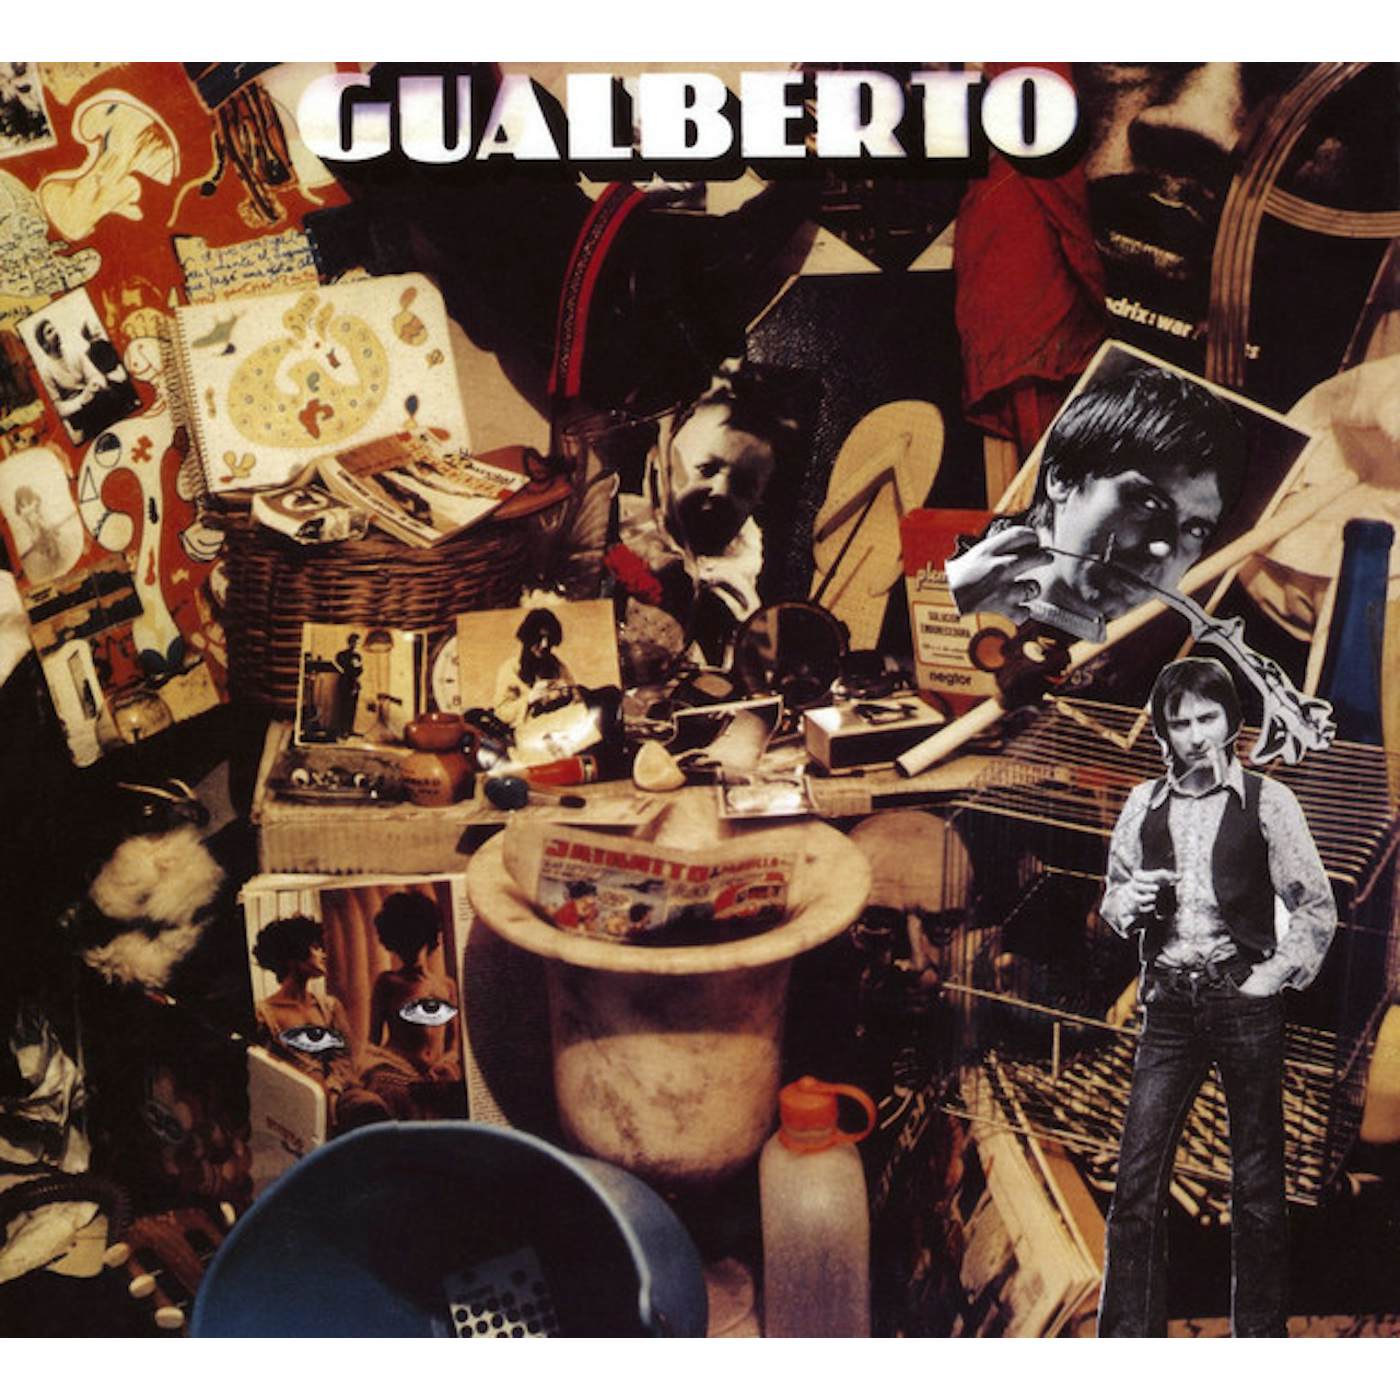 Gualberto A LA VIDA AL DOLOR Vinyl Record